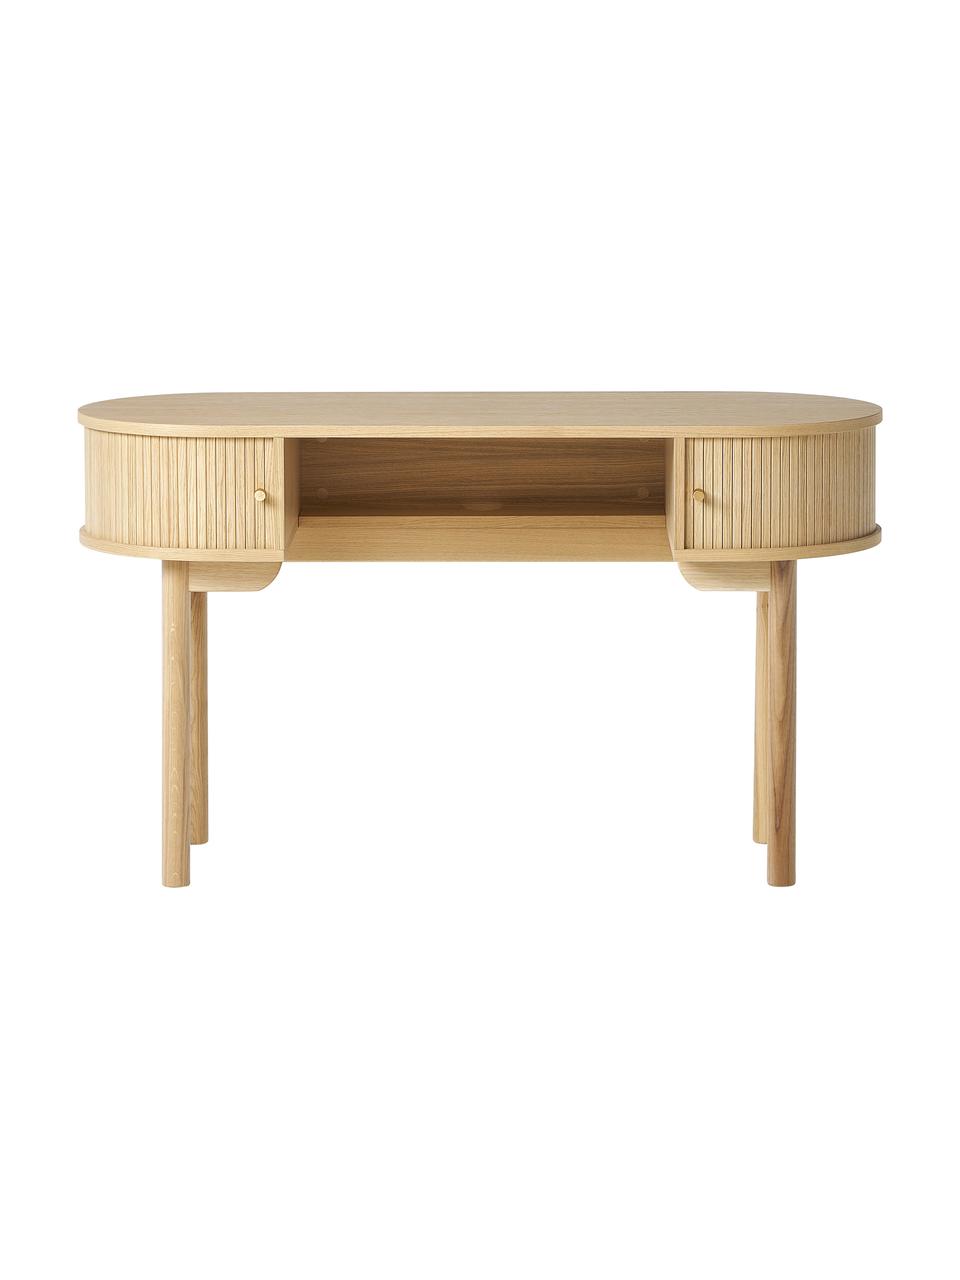 Psací stůl s žebrováním Front, Světlé dřevo, Š 130 cm, H 50 cm